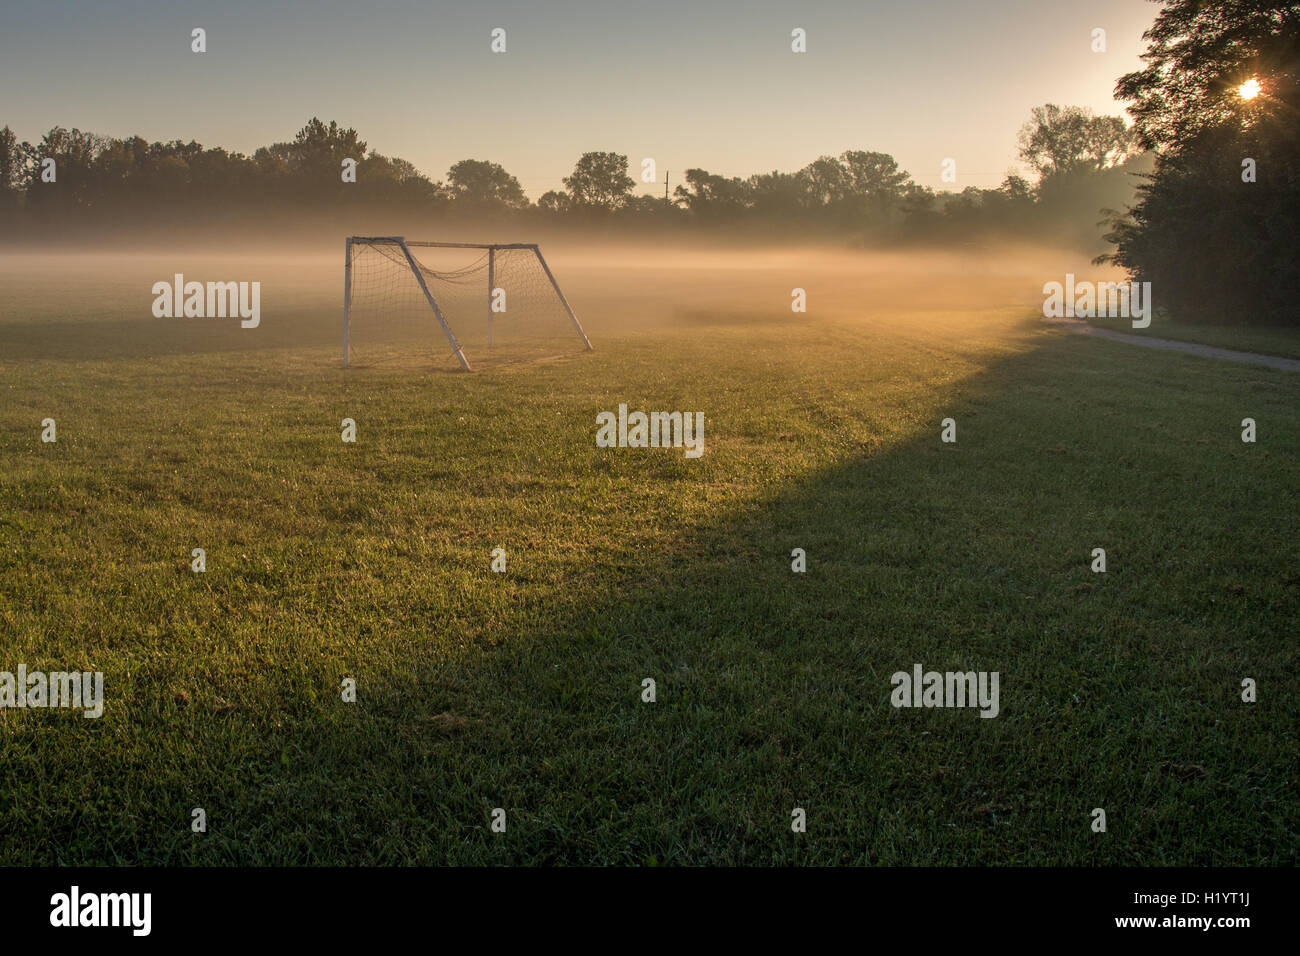 empty soccer field on a misty morning Stock Photo